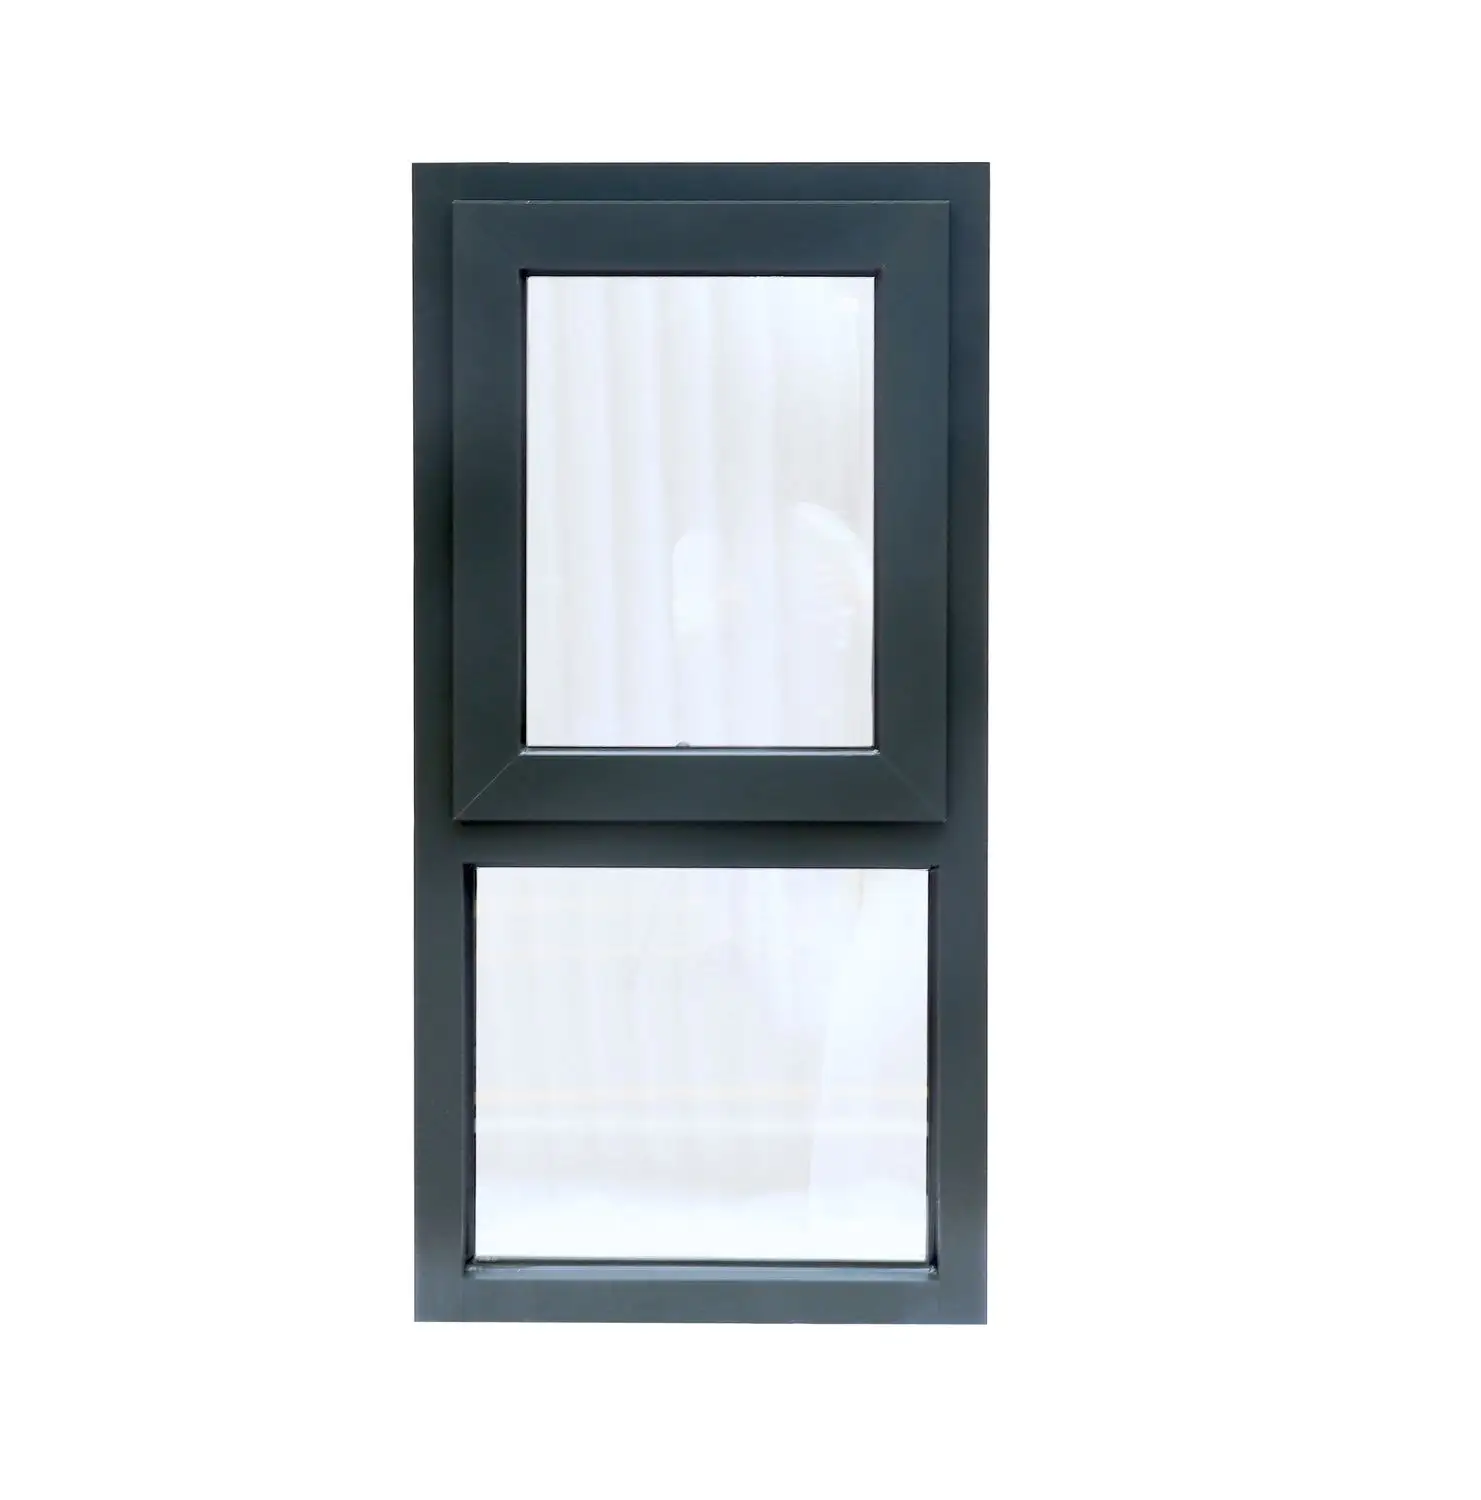 AS2047 desain standar Aluminium tenda jendela standar Australia jendela mengkilap ganda jendela tetap dengan layar